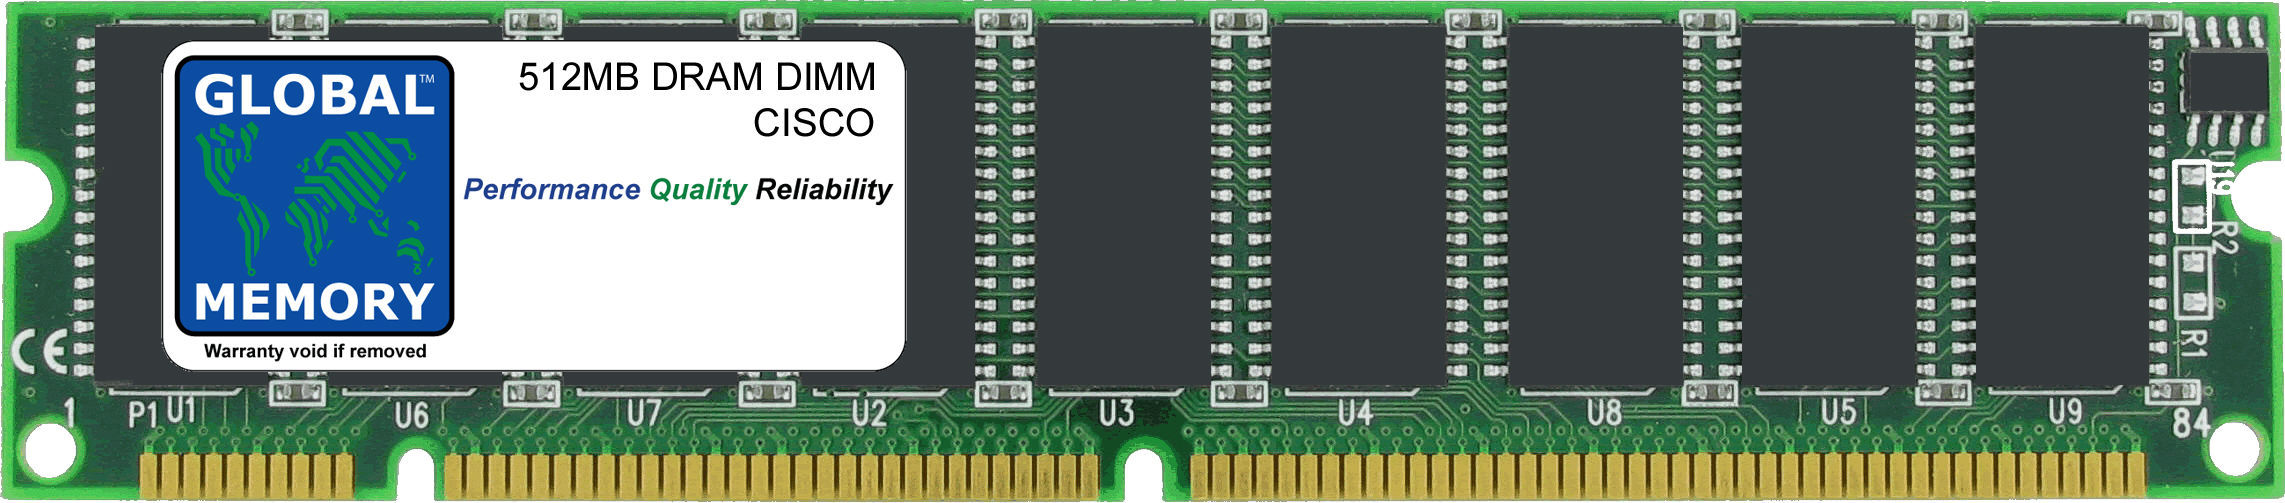 512MB DRAM DIMM MEMORY RAM FOR CISCO MEDIA CONVERGENCE SERVER MCS 7815-1000 / MCS 7825-1133 / MCS 7835-1266 (MEM-7815-1000-512)